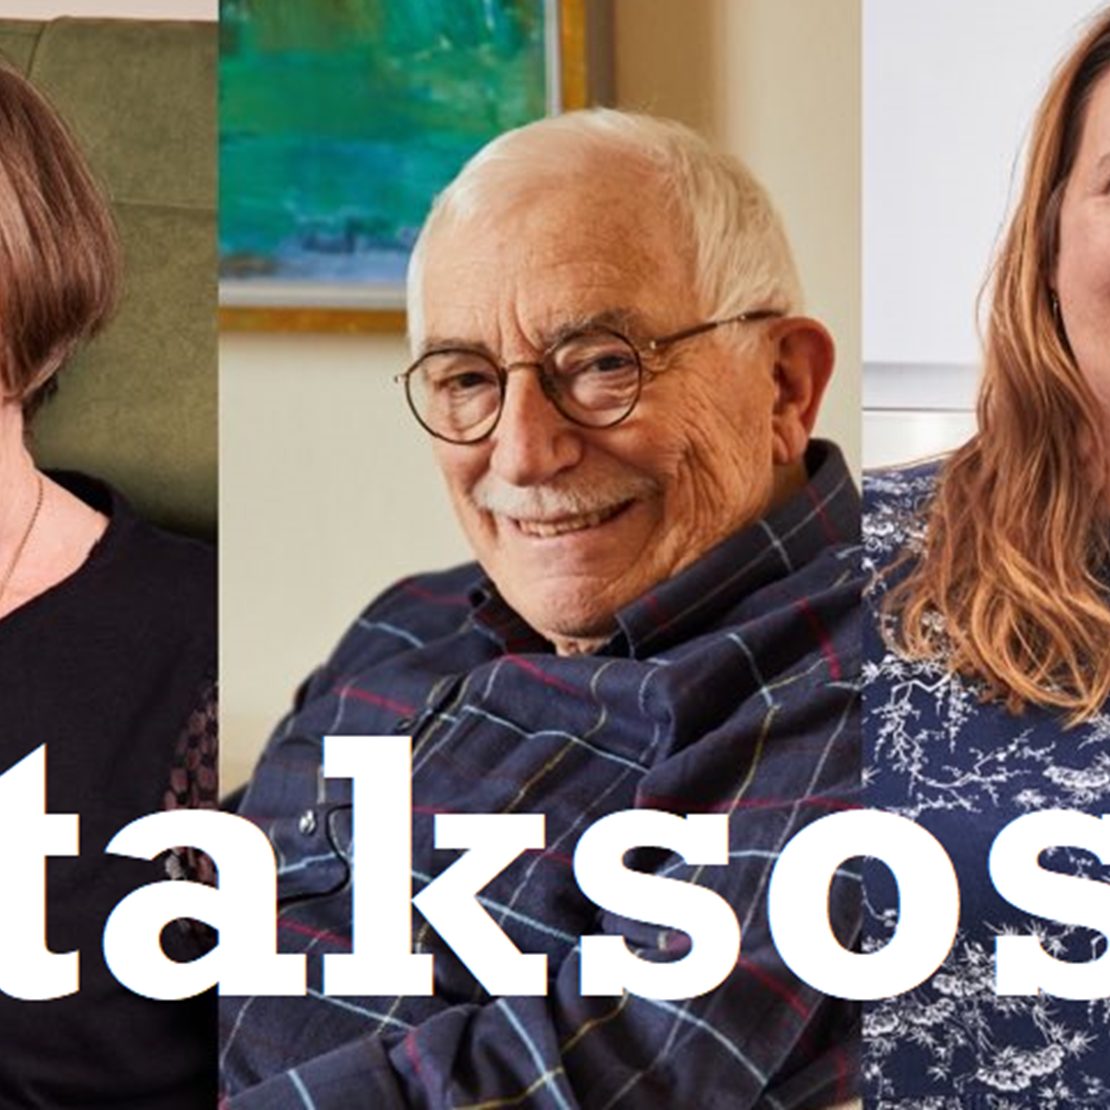 Portrætbilleder af tre smilende personer og nederst står teksten: #taksosu